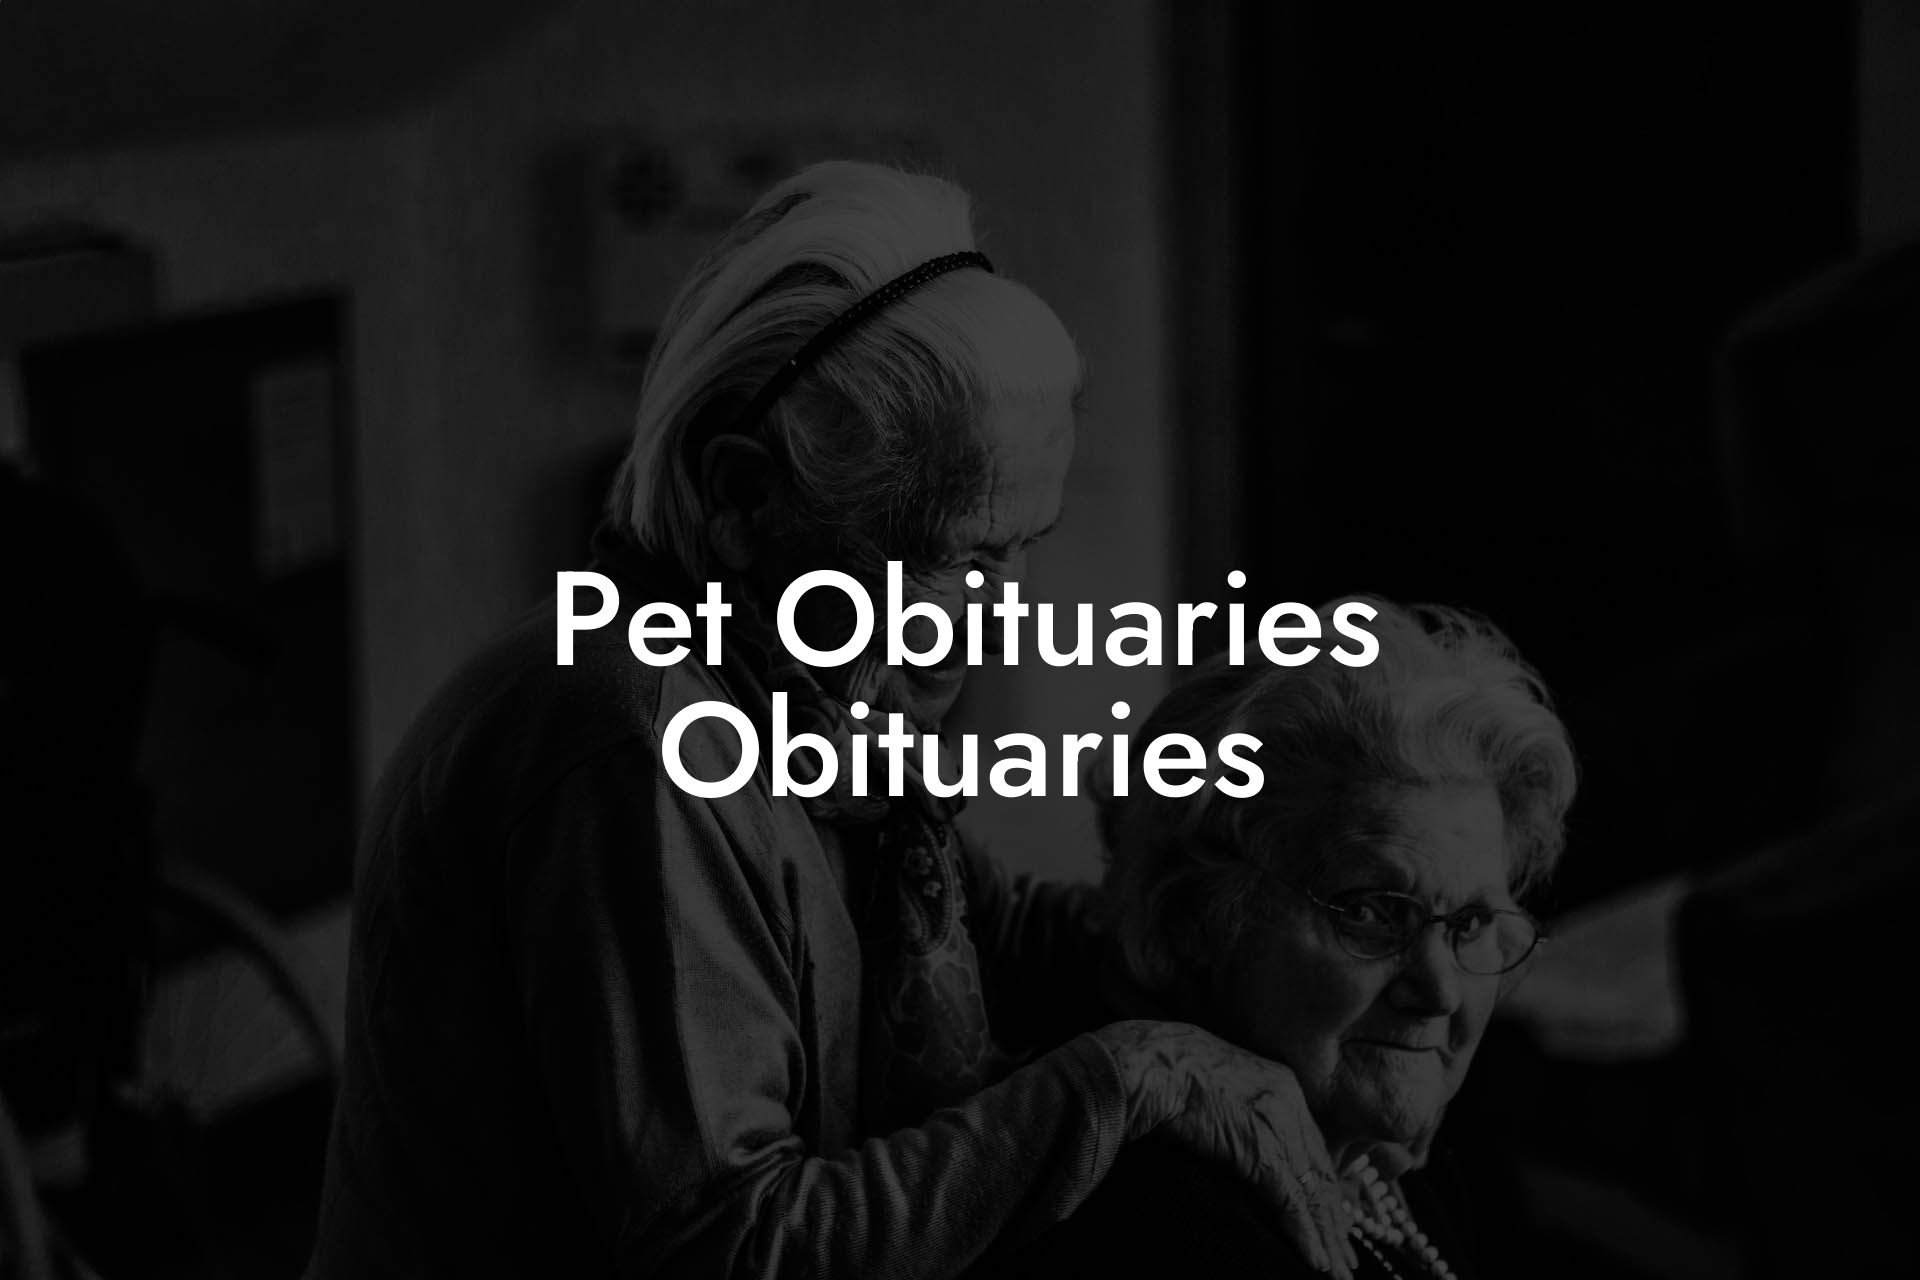 Pet Obituaries Obituaries